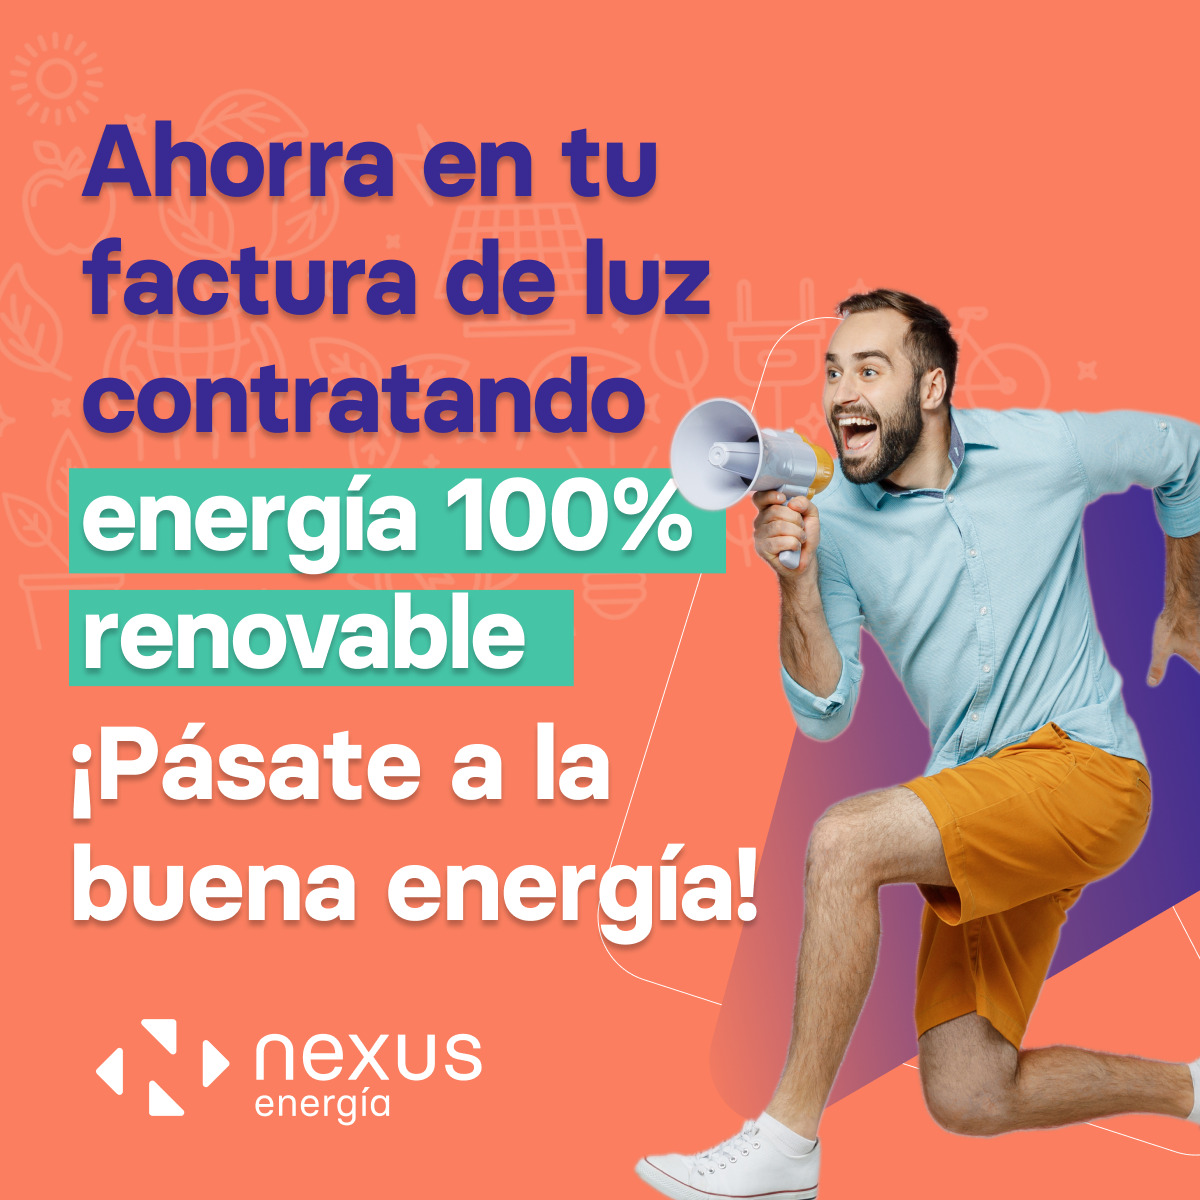 En Nexus Energía apostamos por el Green Friday